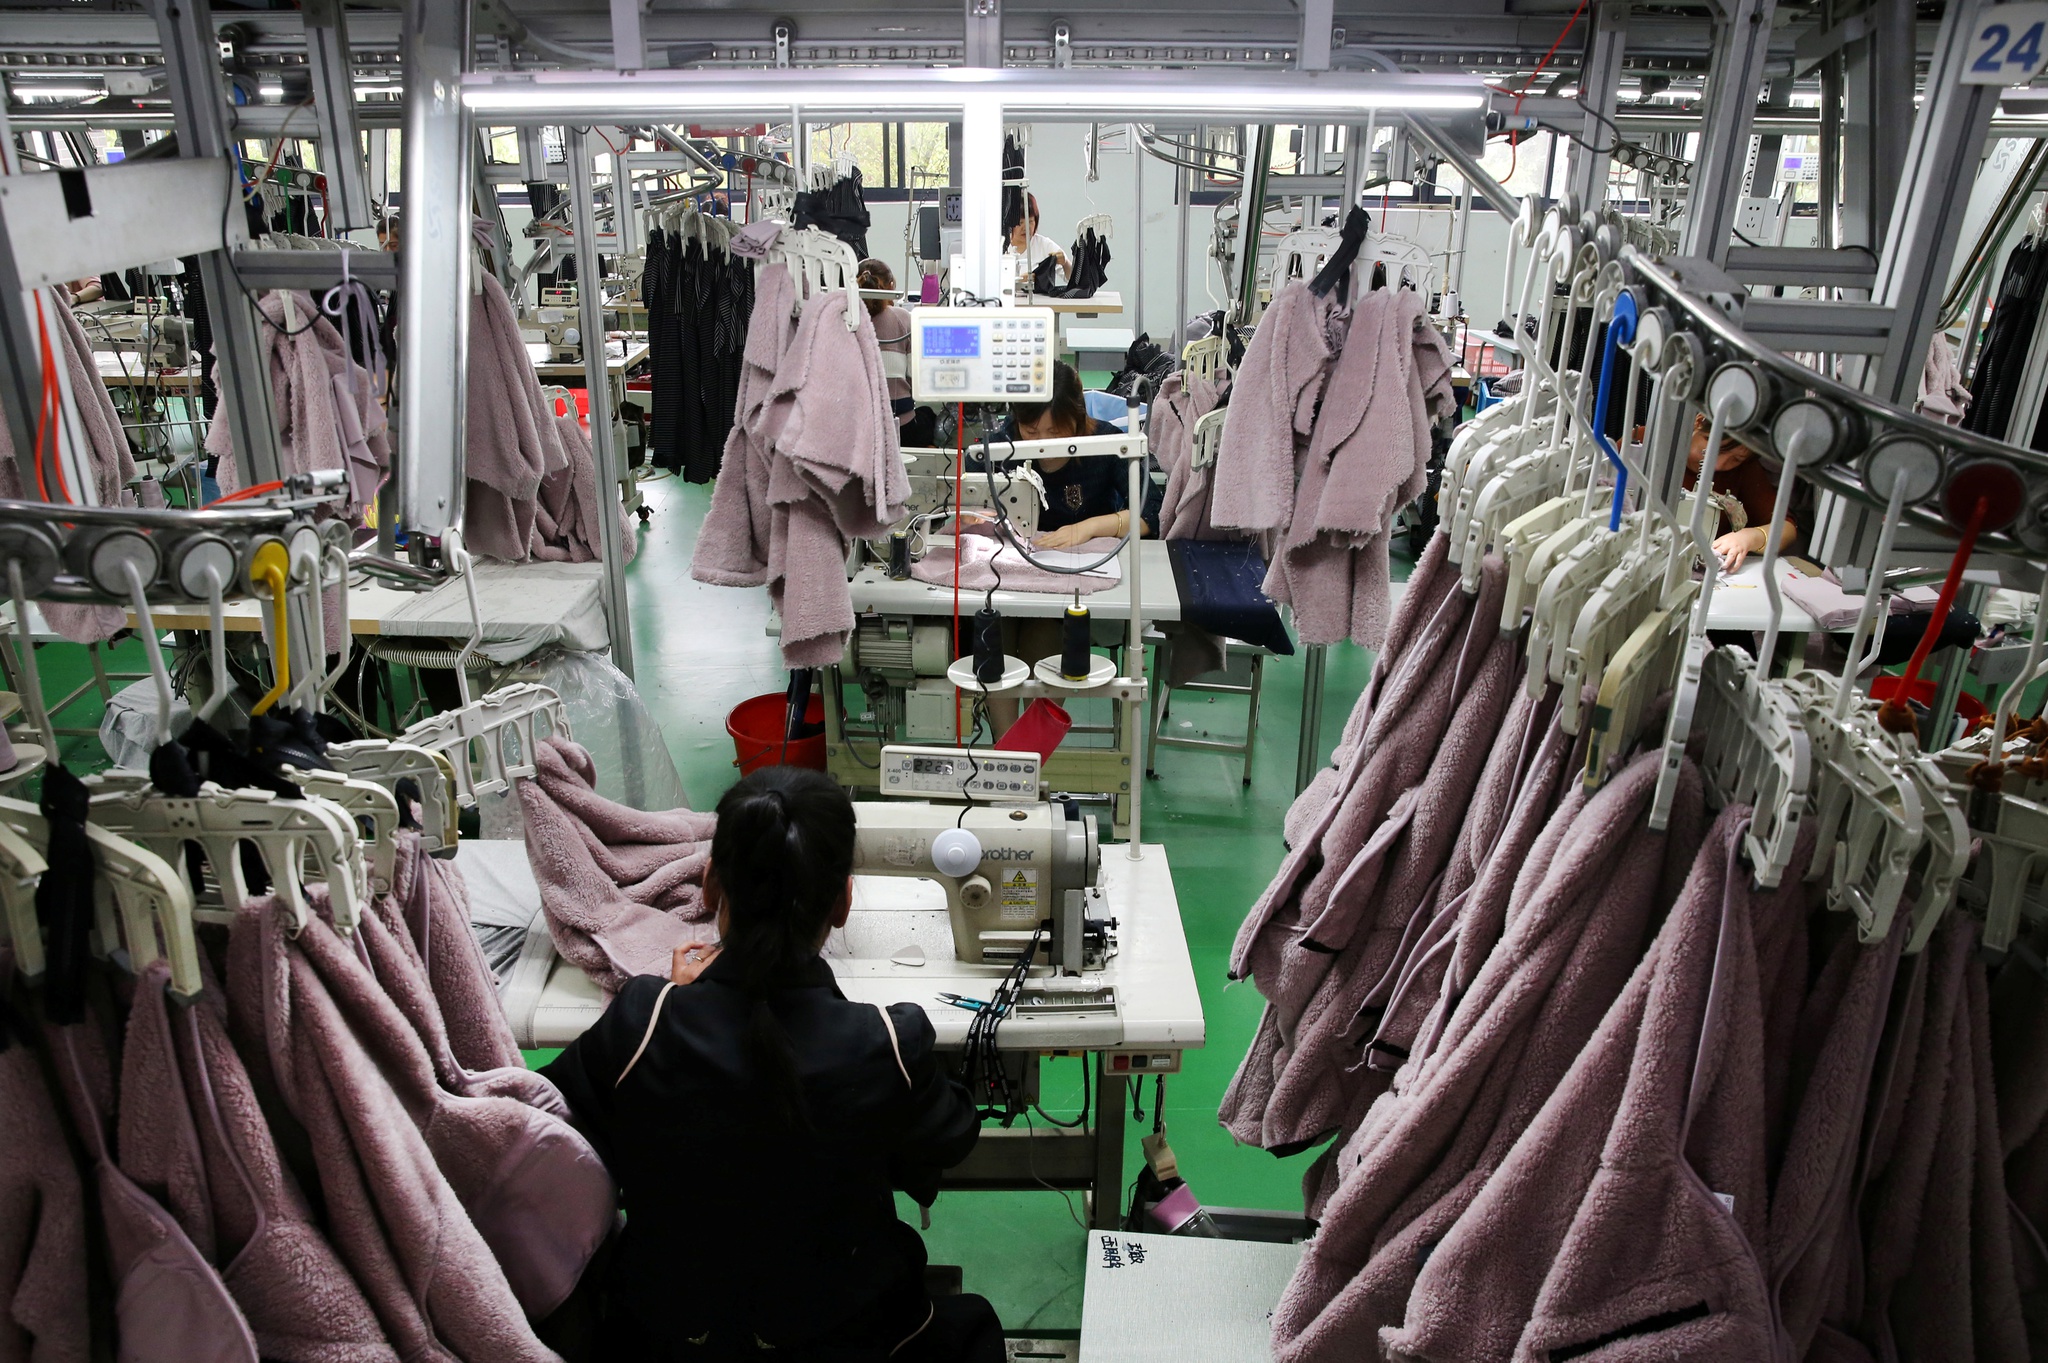 Zara prepara-se para expandir venda de roupa em segunda mão - Empresas -  Jornal de Negócios